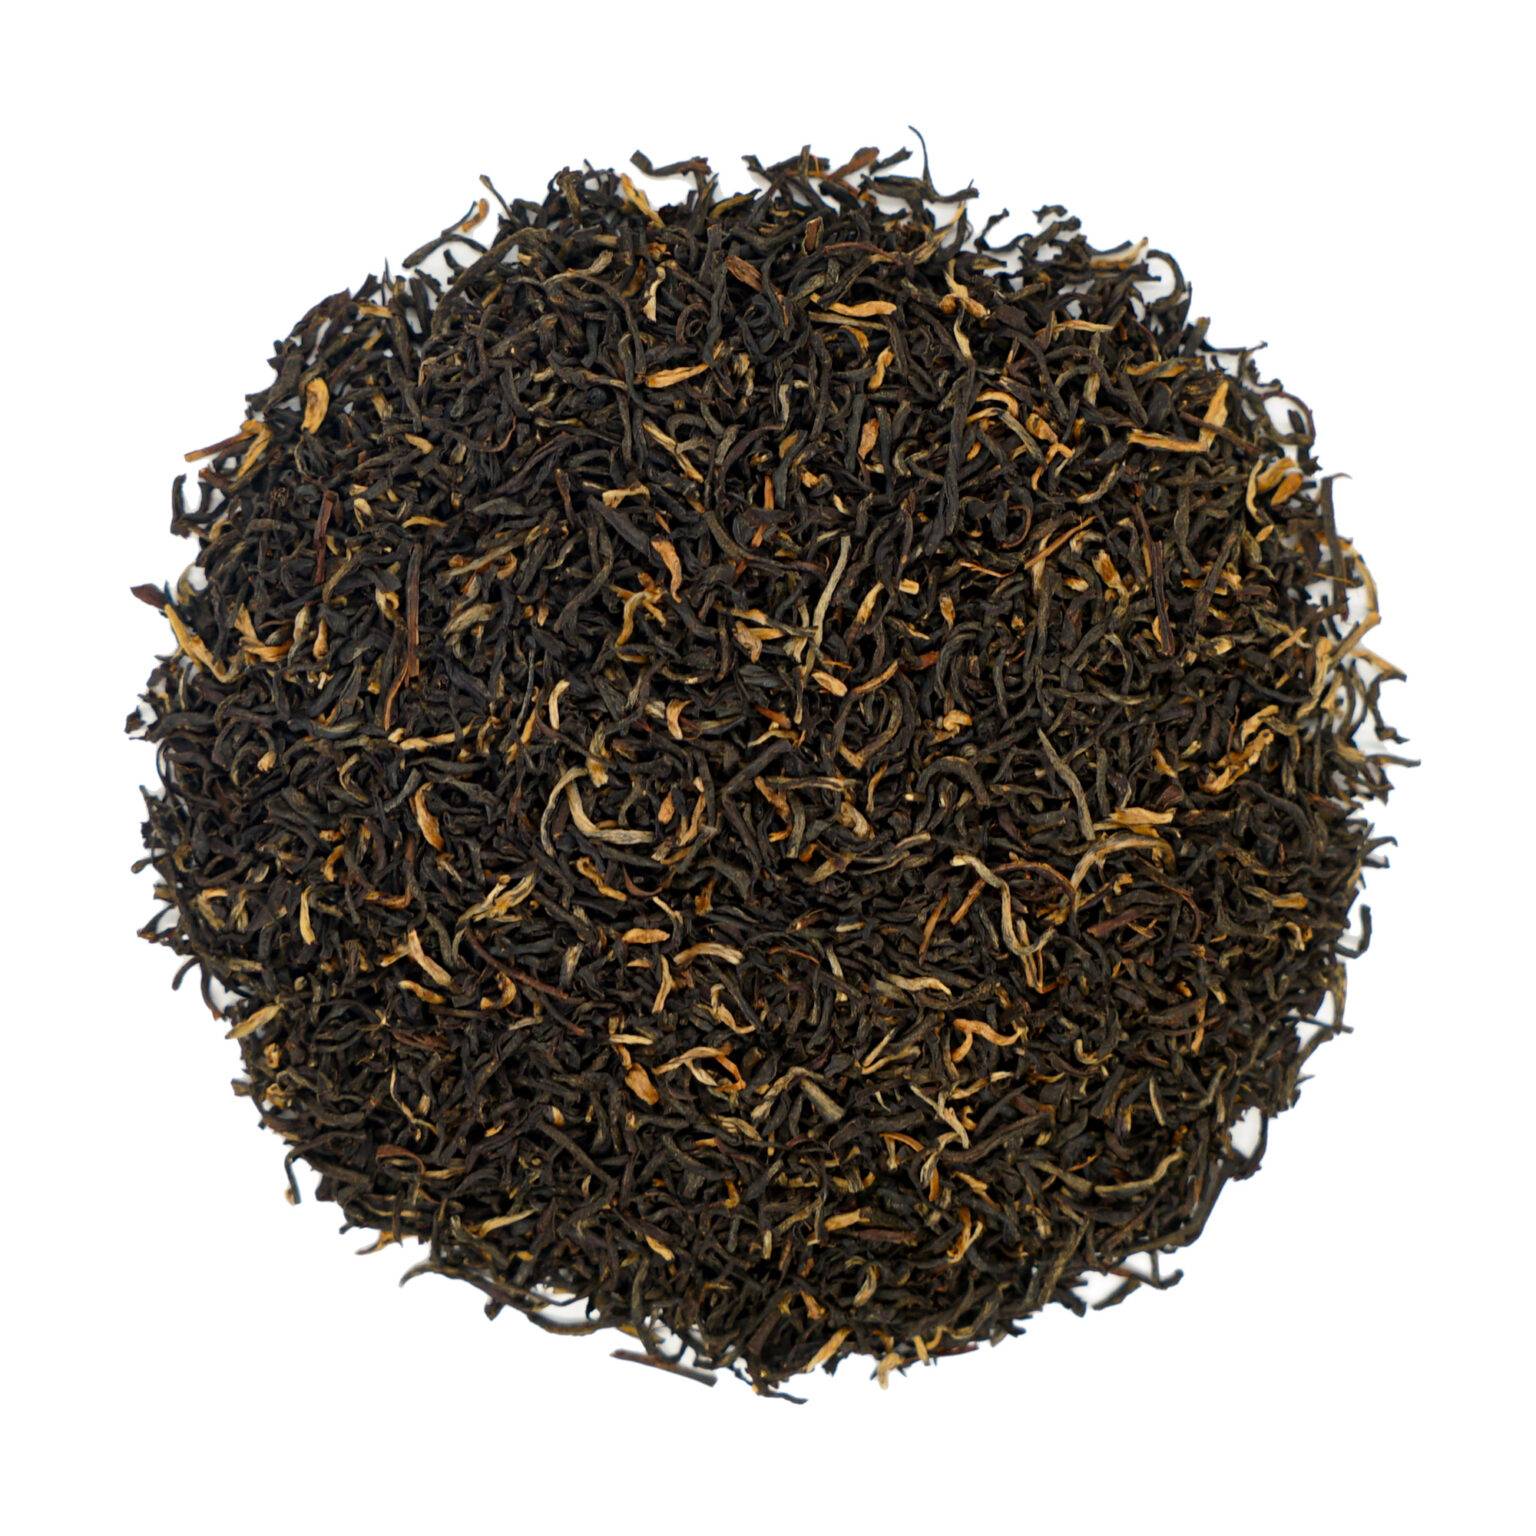 Herbata Assam Singlijan - Wyjątkowa jakość z Assamu